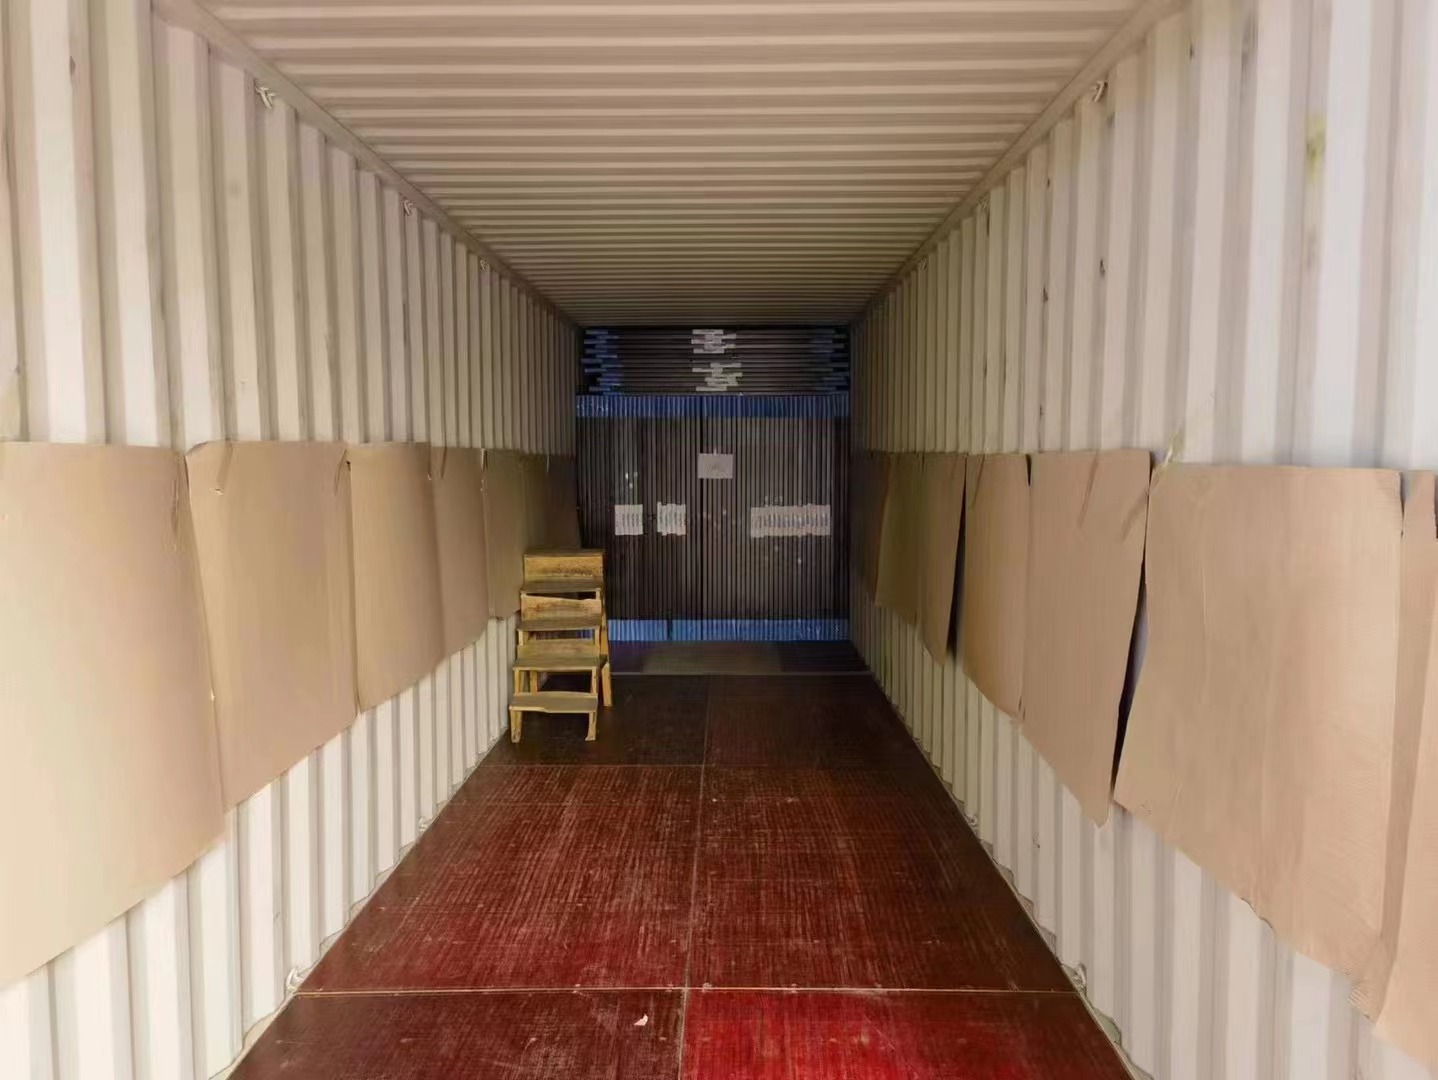 Loading container of America steel door